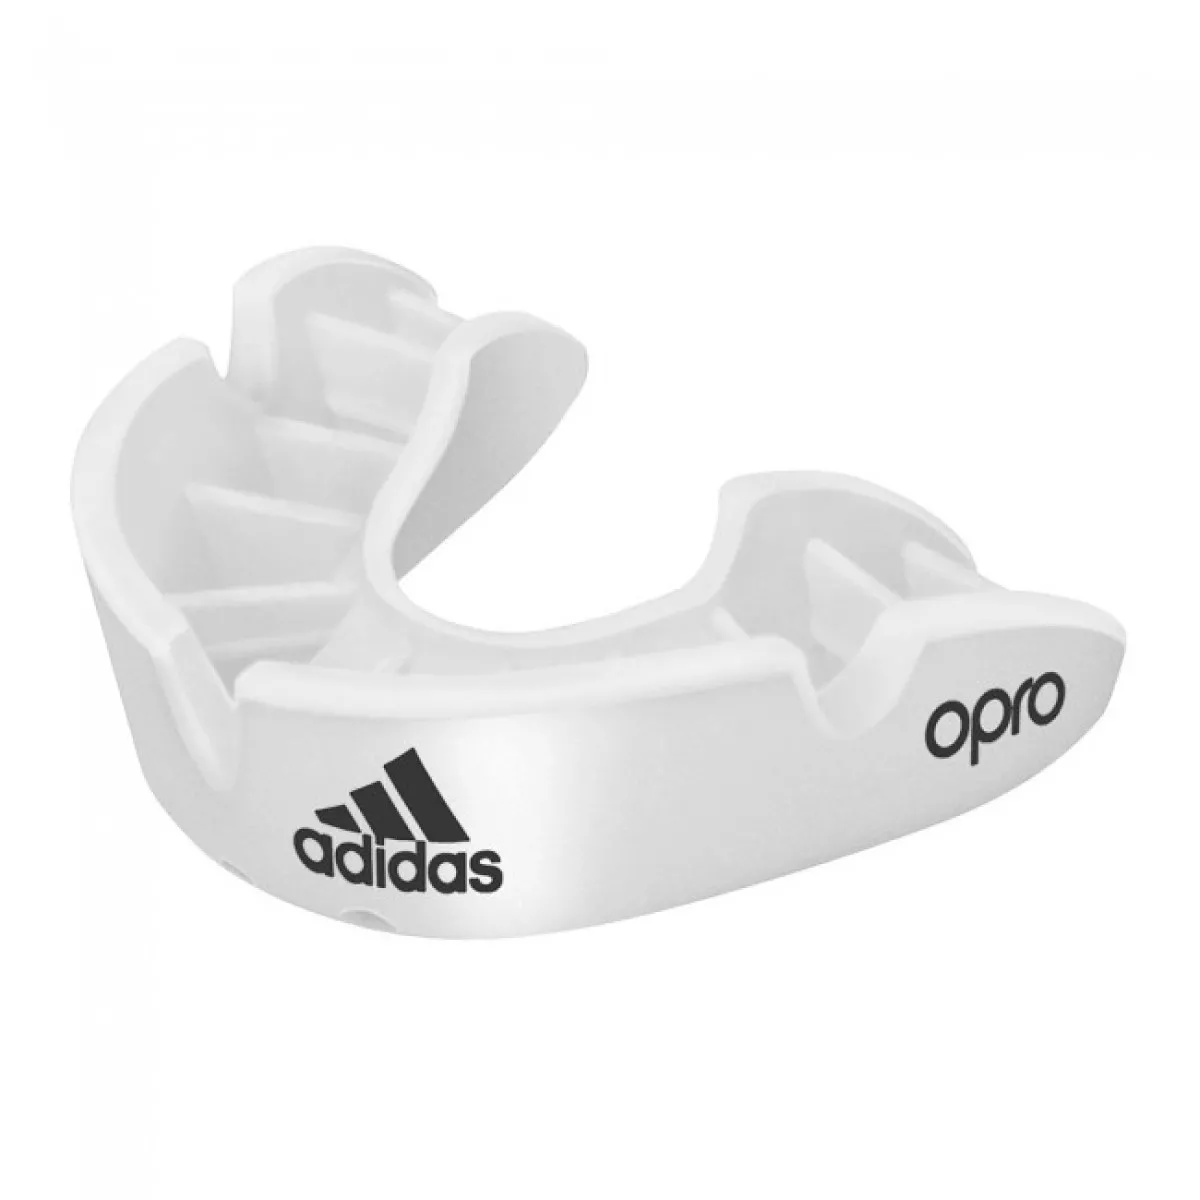 adidas mouthguard Opro Bronze white